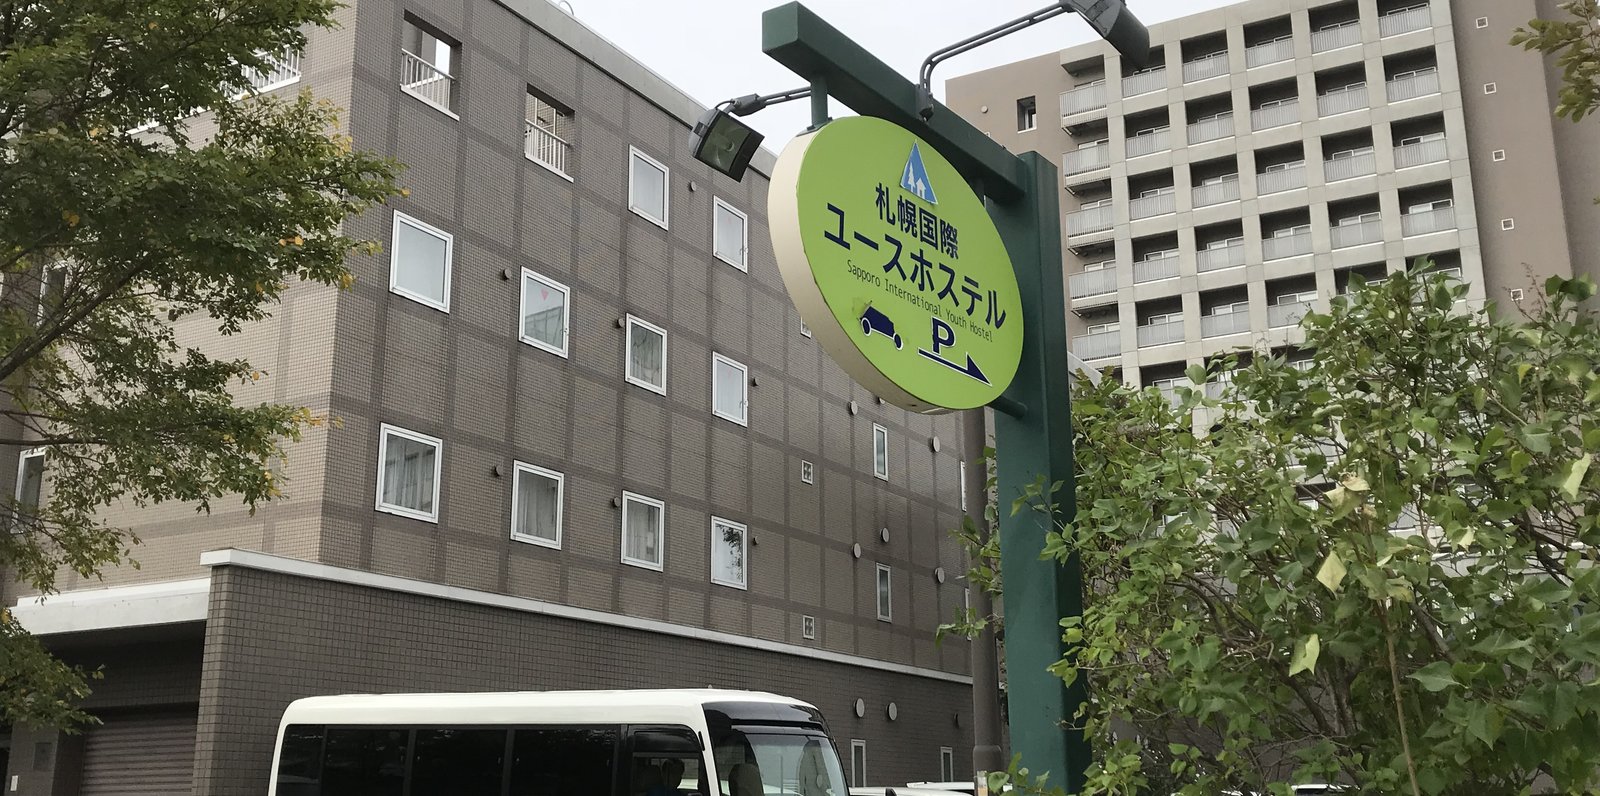 札幌国際ユースホステル